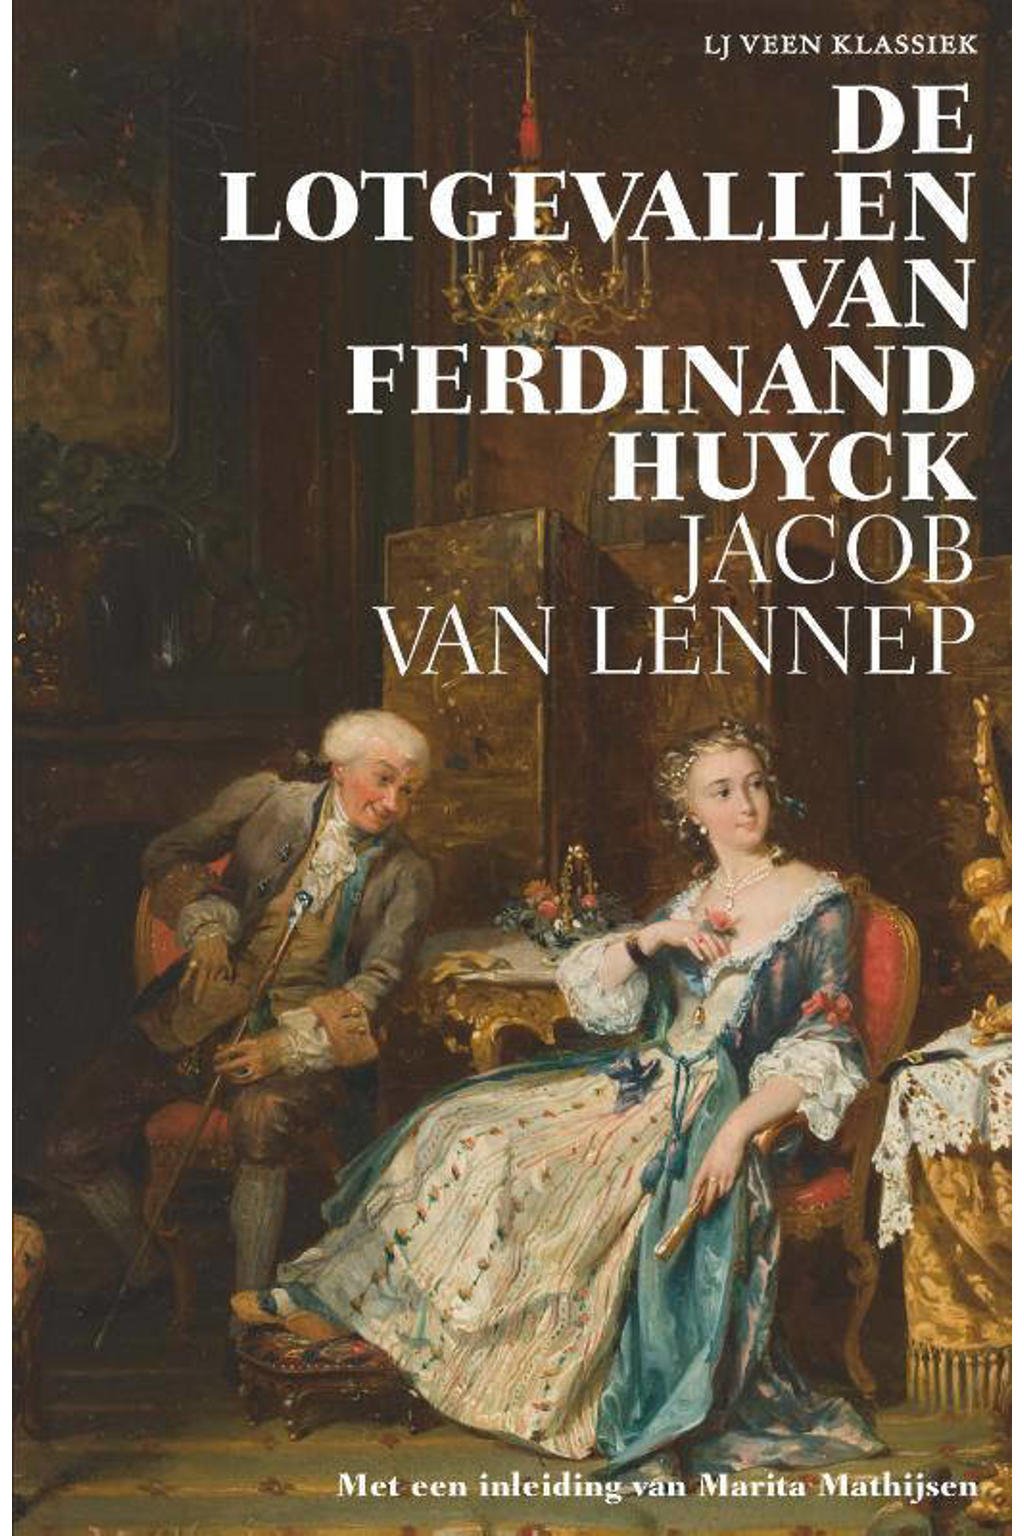 LJ Veen Klassiek: De lotgevallen van Ferdinand Huyck - Jacob van Lennep